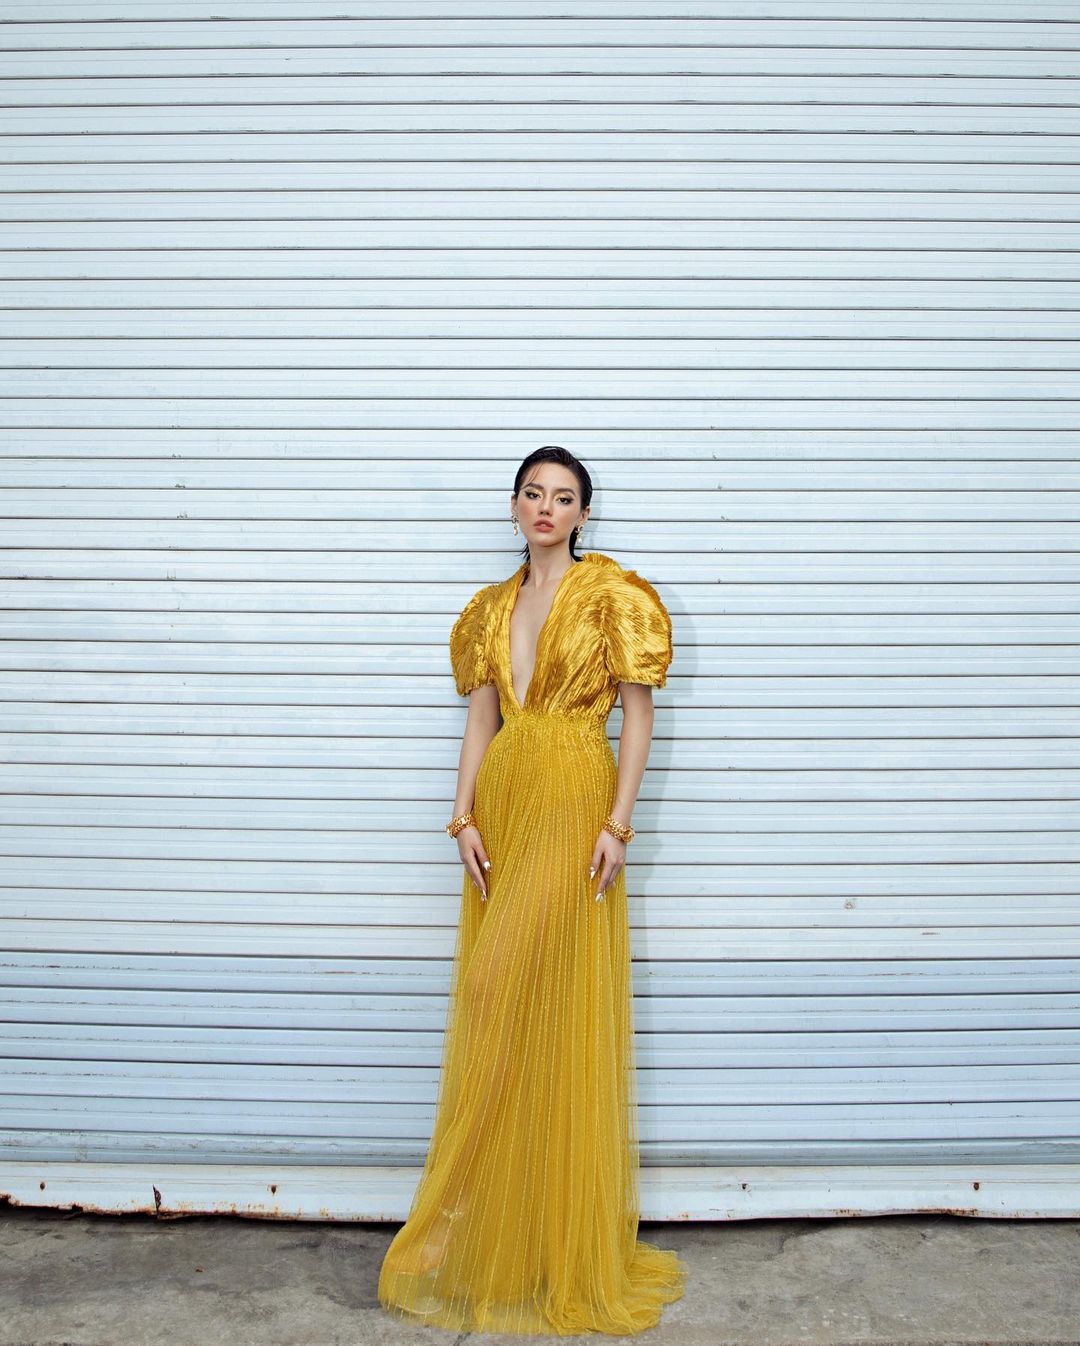 Chiếc váy mang màu sắc được Pantone dự đoán là màu của năm 2021: Màu vàng. Trong màn đêm của buổi sự kiện, Khánh Linh tỏa sáng như Nữ thần mặt trời.